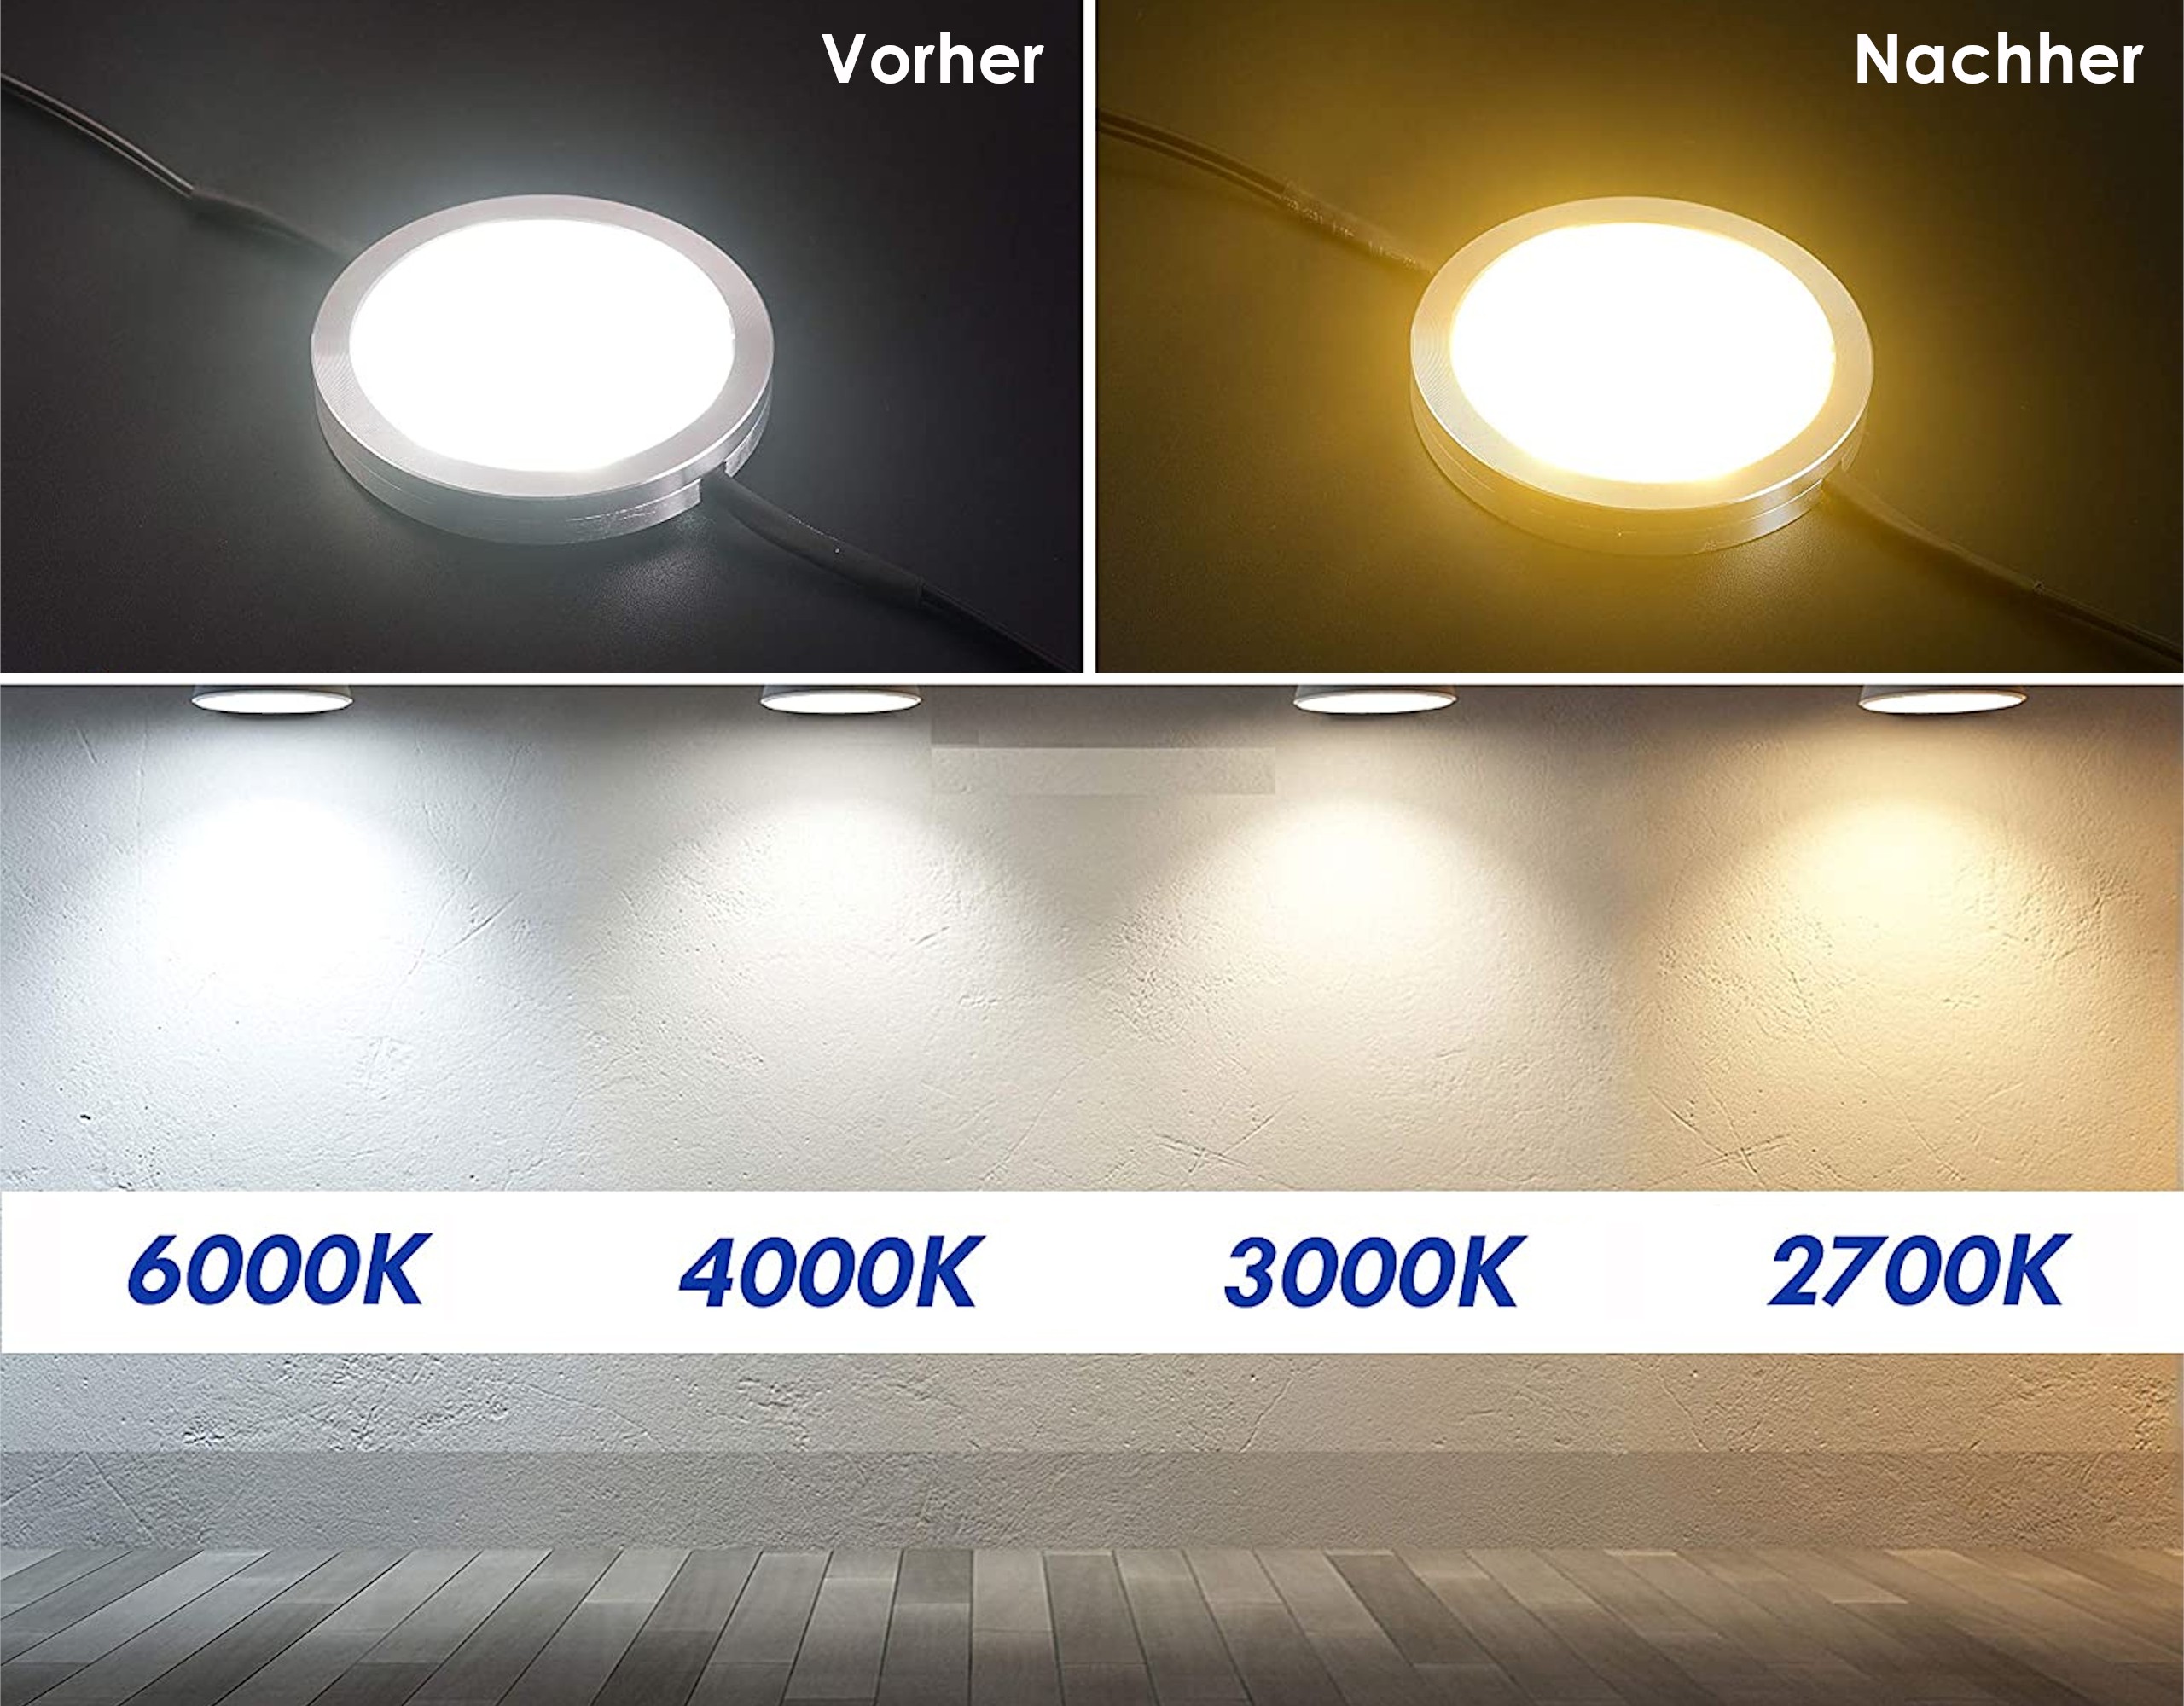 Selbstklebende Farbfolien für LED Lampen, ⌀5 CM Kreiszuschnitt, Warmweiß Farbfilter zur Farbkorrektur, Tageslicht zu Glühlicht, Filterset mit 9 Stück